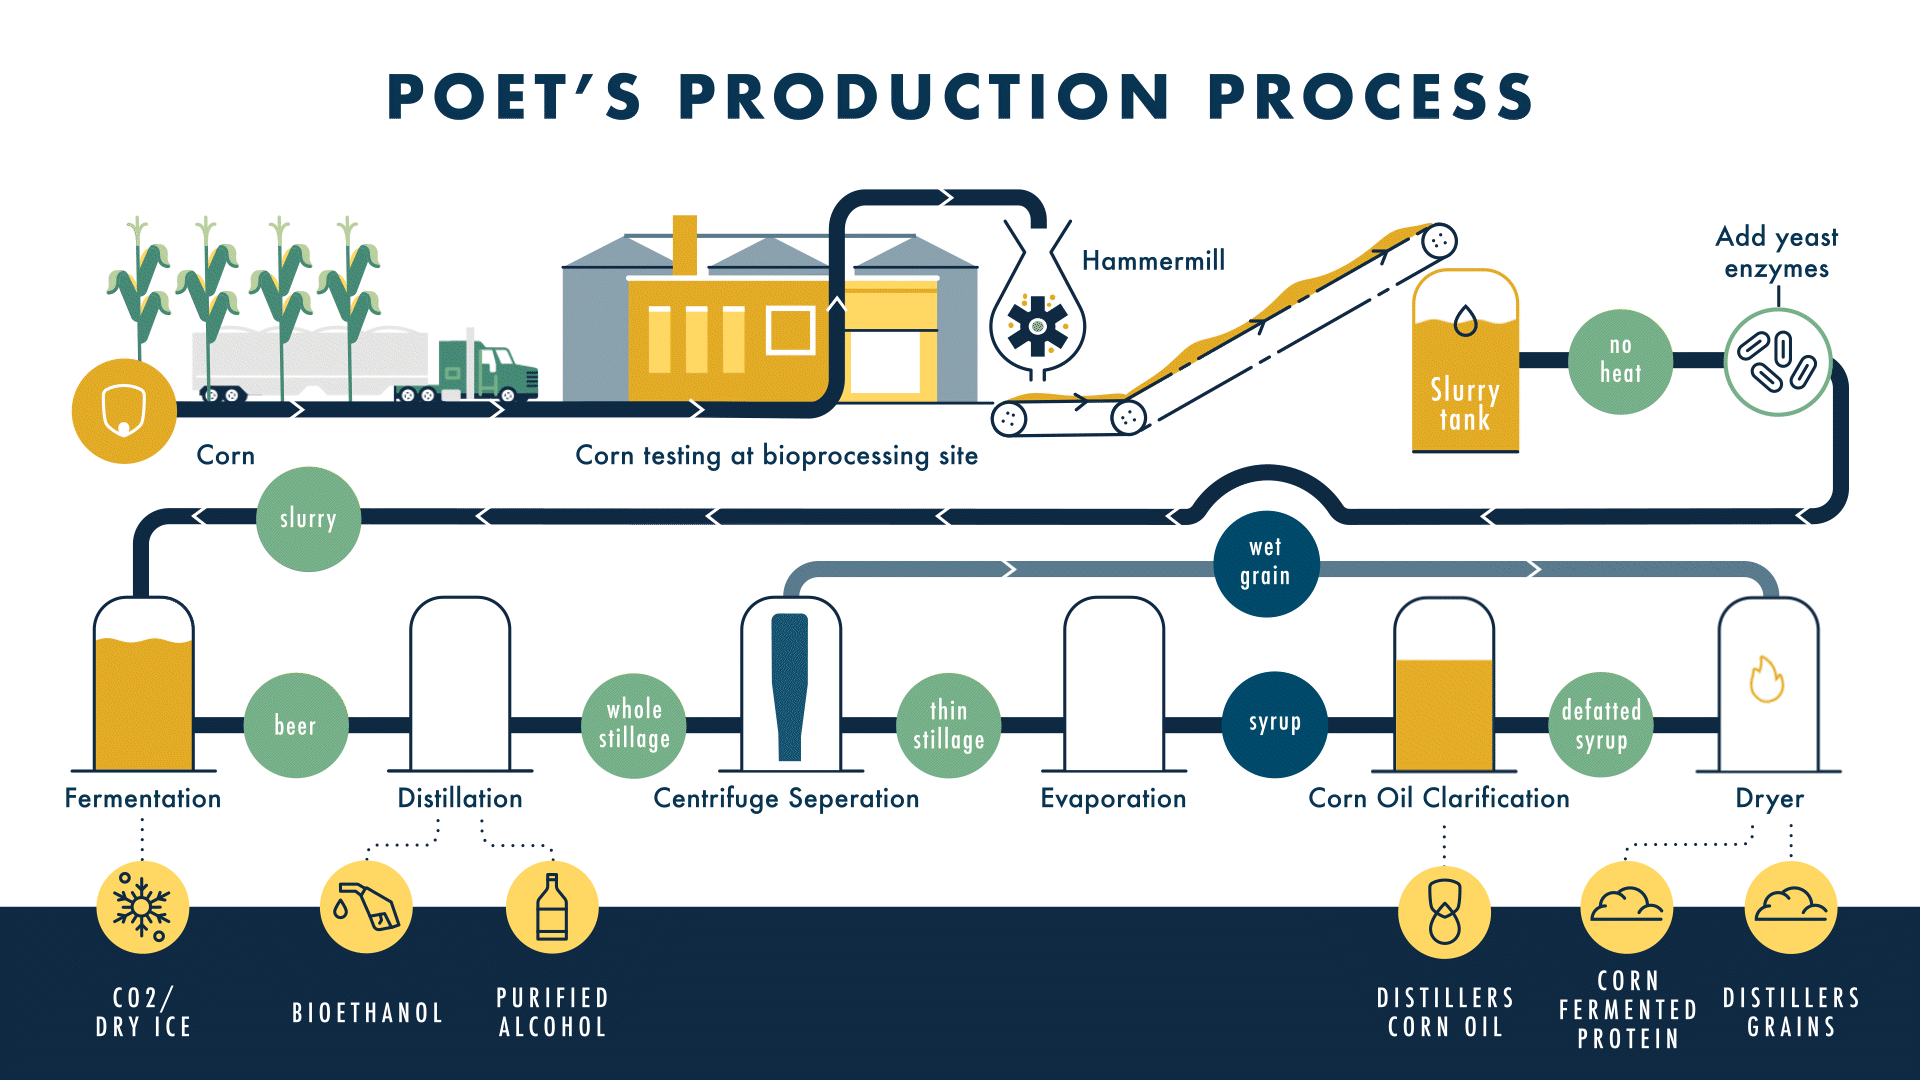 POET's Production Process